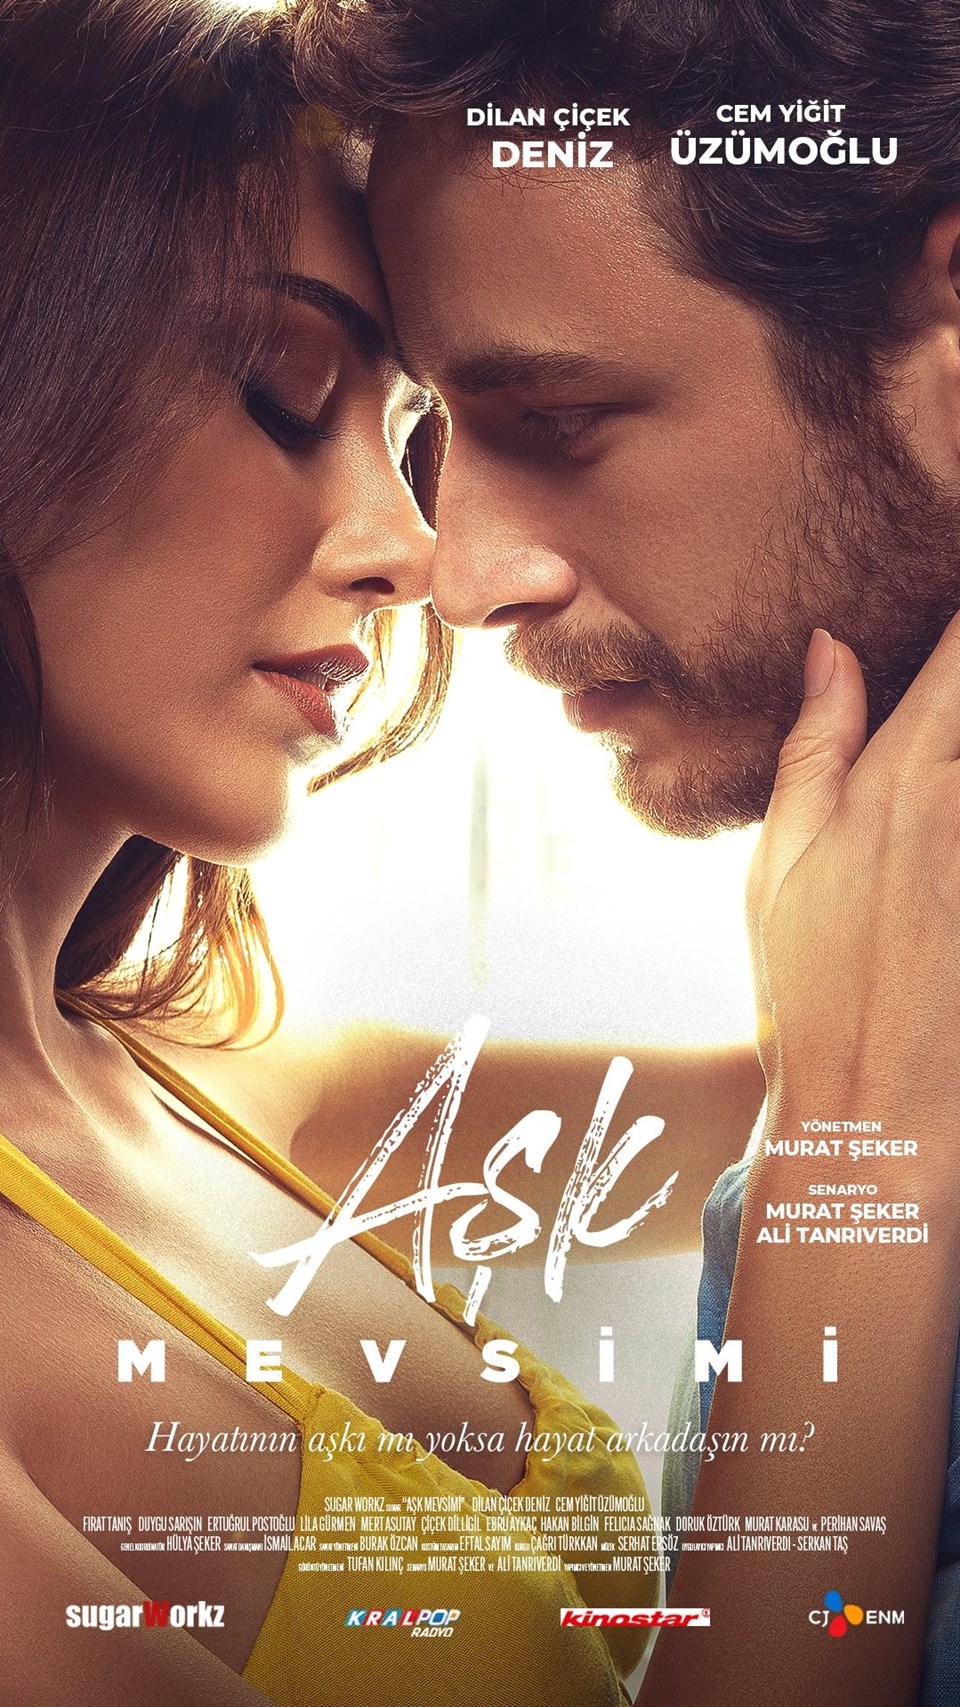 Aşk Mevsimi filminin afişi yayınlandı: Dilan Çiçek Deniz ve Cem Yiğit Üzümoğlu başrolde - 1